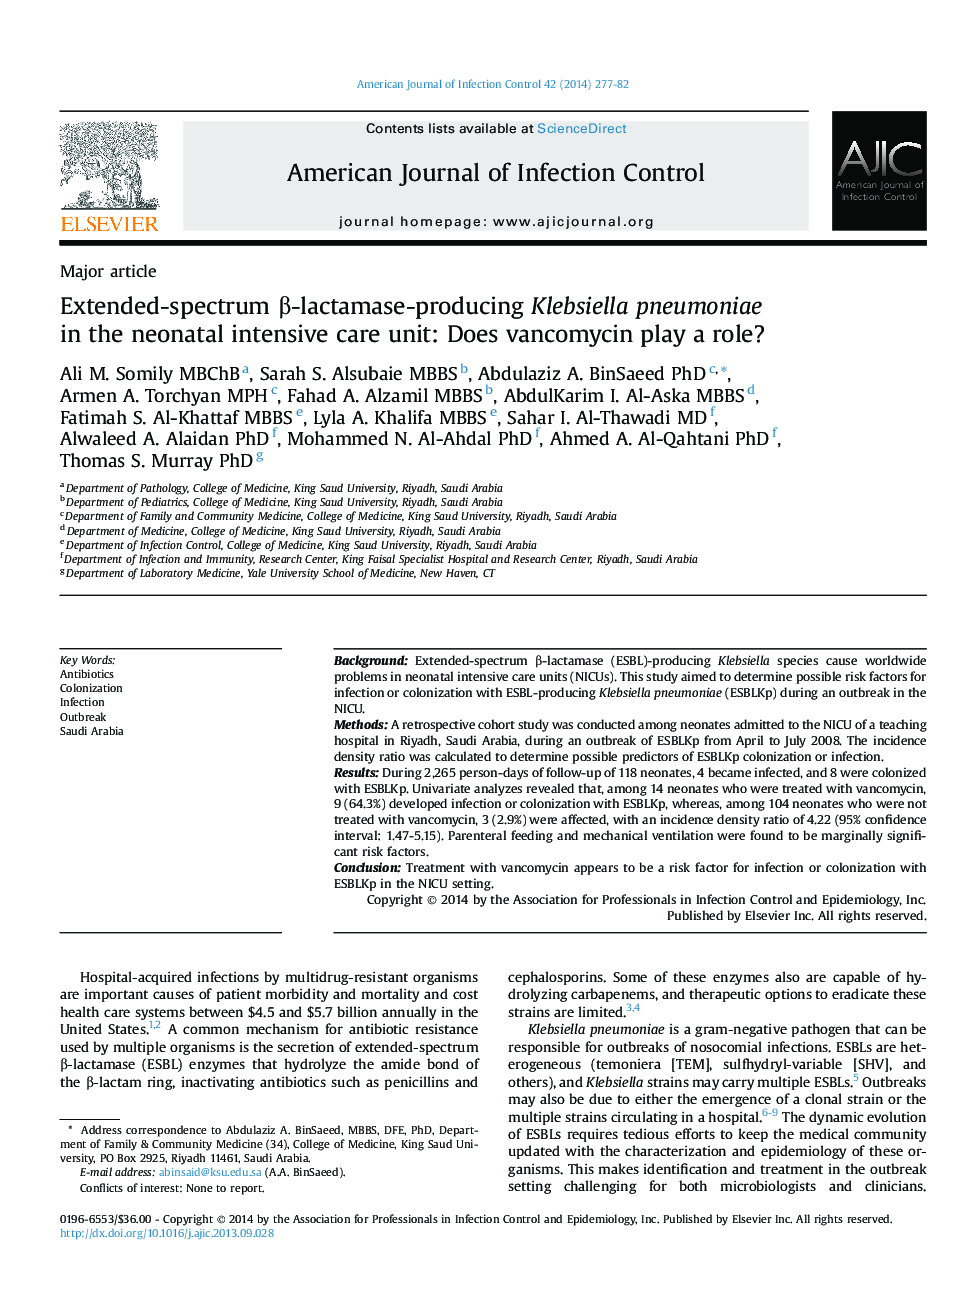 کلبسیلا پنومونیه تولیدکننده β-lactamase طیف گسترده در بخش مراقبت های ویژه نوزادان: آیا وانکومایسین نقش مهمی دارد؟